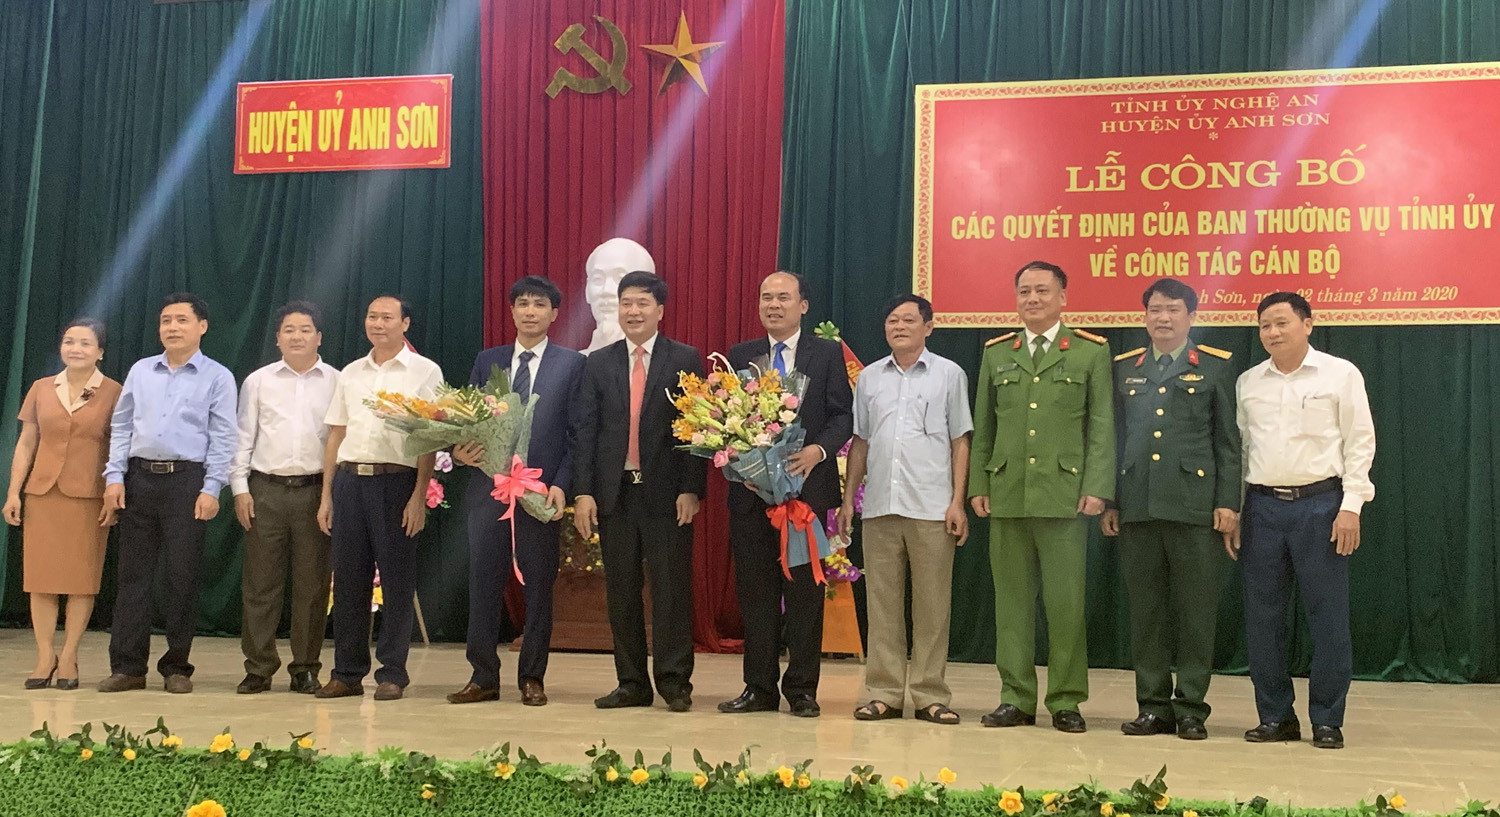 Lãnh đạo huyện Anh Sơn chúc mừng 2 đồng chí được bổ nhiệm.